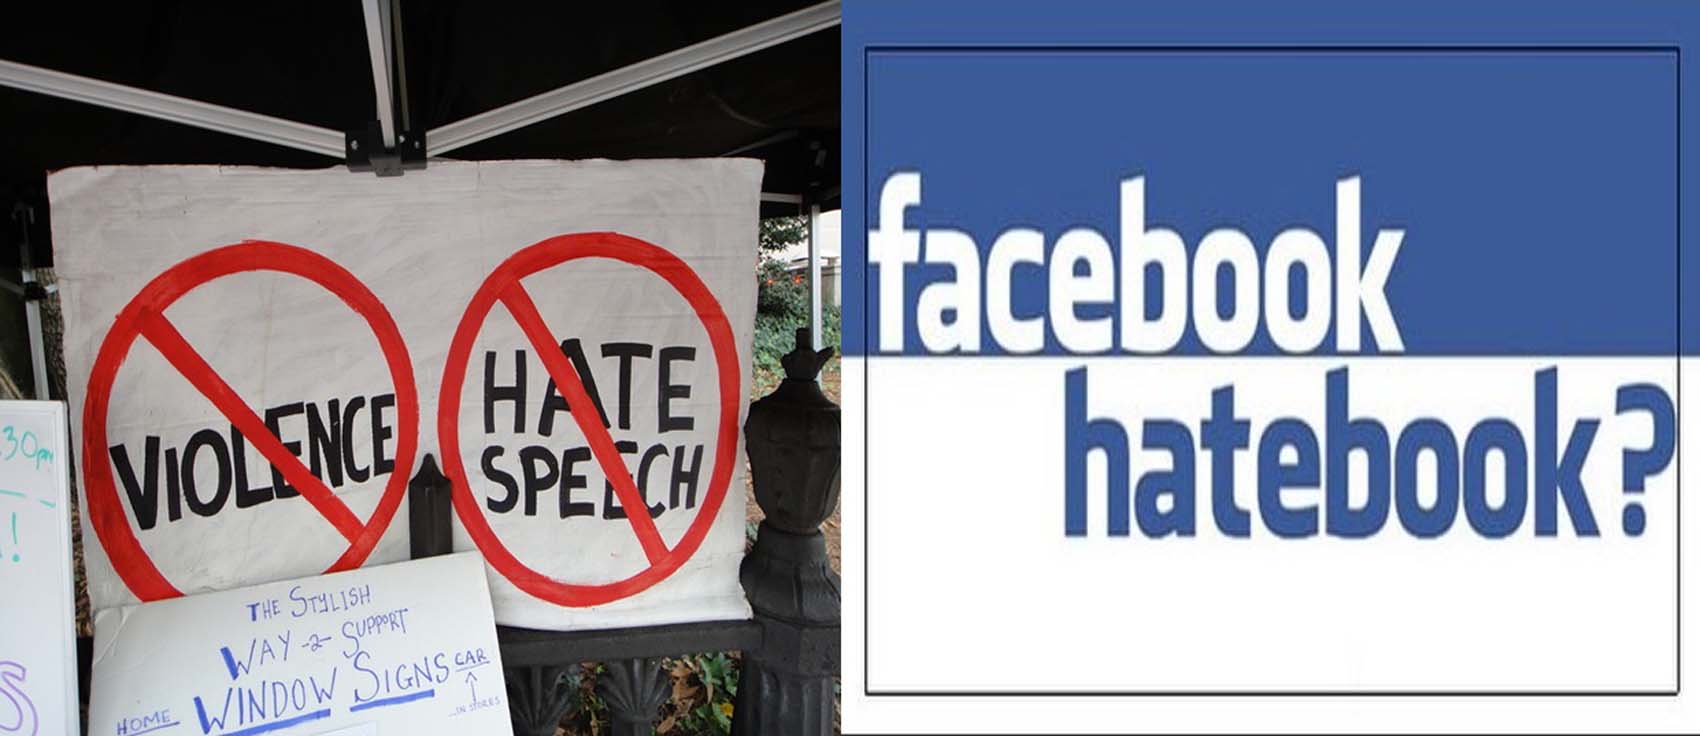  भारत में फेसबुक बना मुस्लिम विरोध (इस्लामोफोबिया) और फेक न्यूज़ का अखाड़ा।